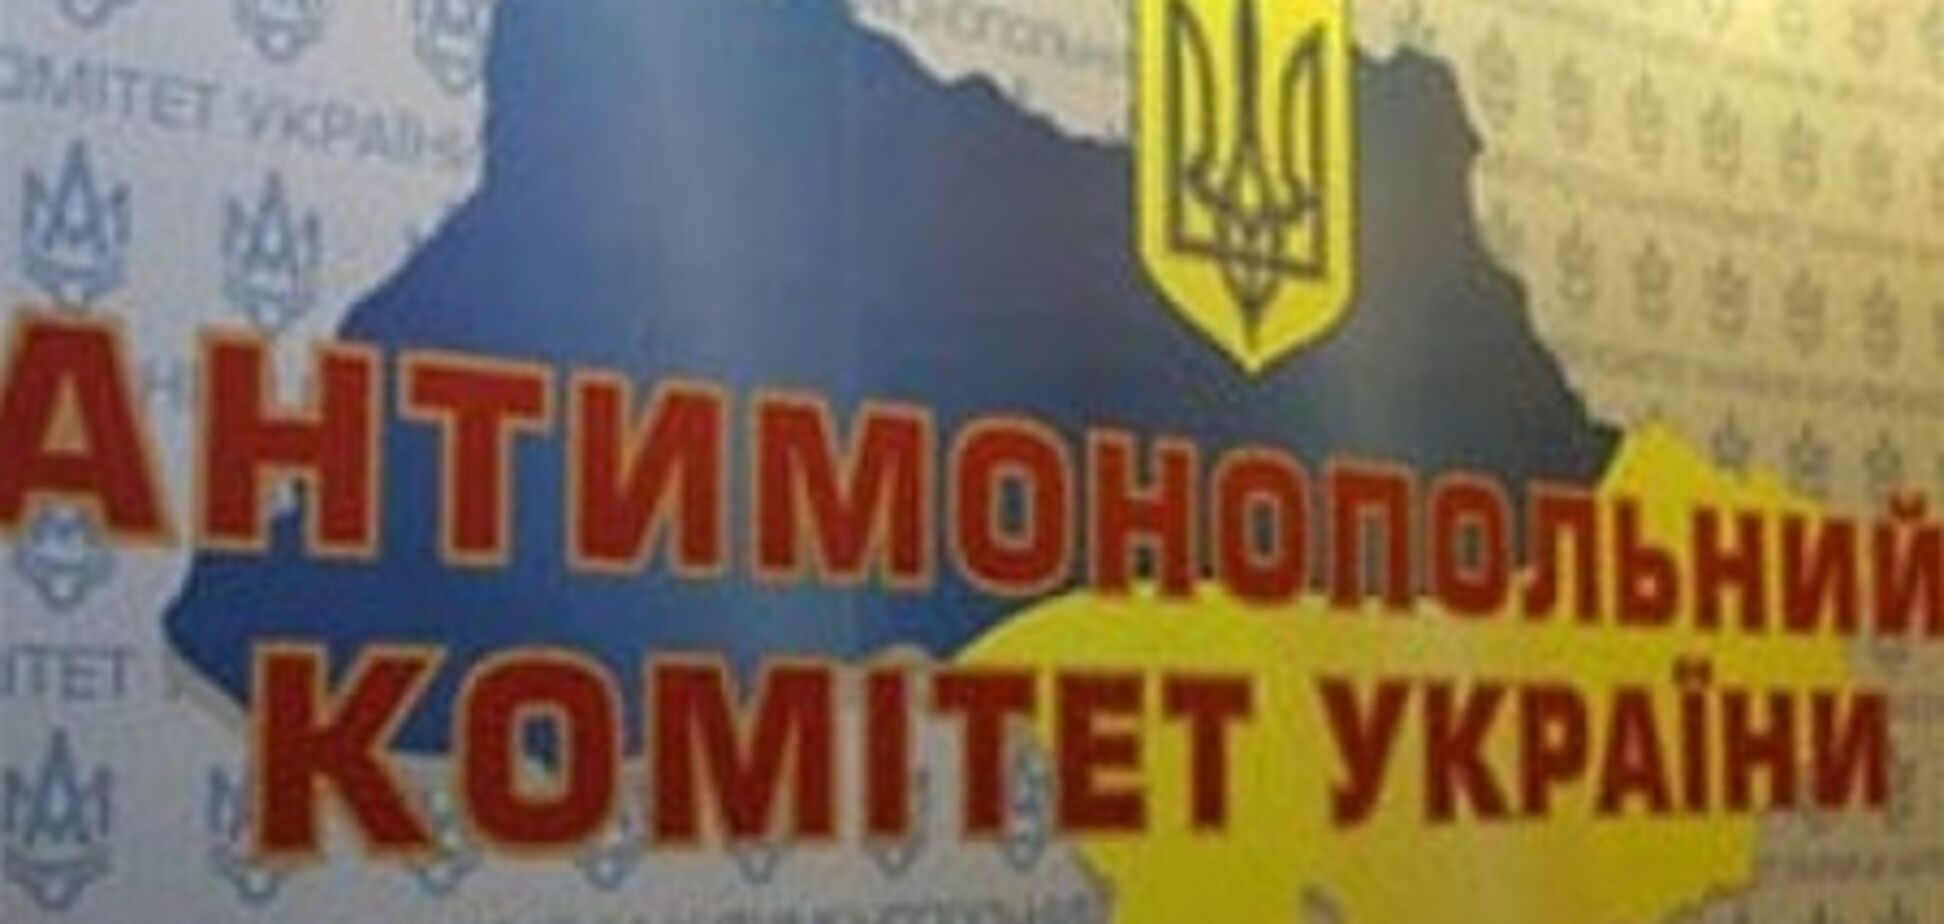 АМКУ оштрафовал 'Киевреконструкция'